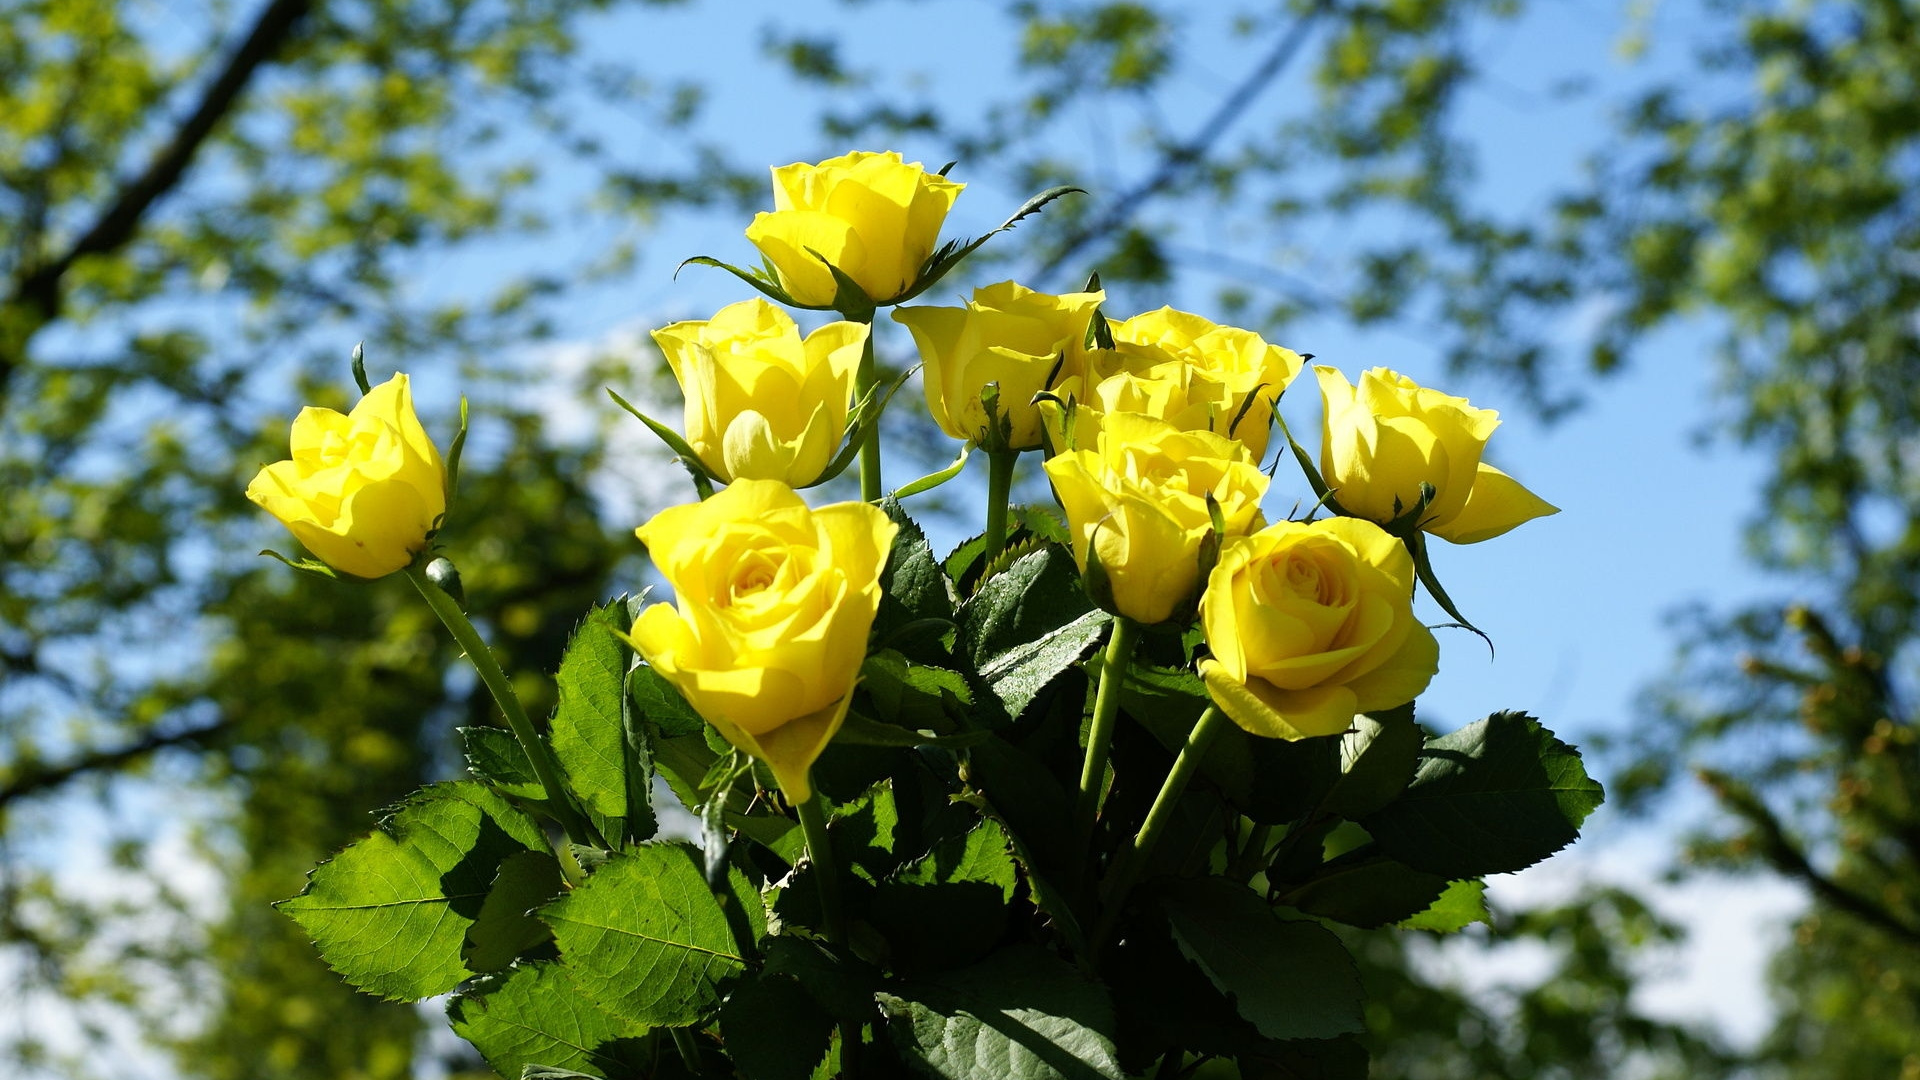 Желтые цветы: лесные цветы с желтым оттенком, дикие желтые розы